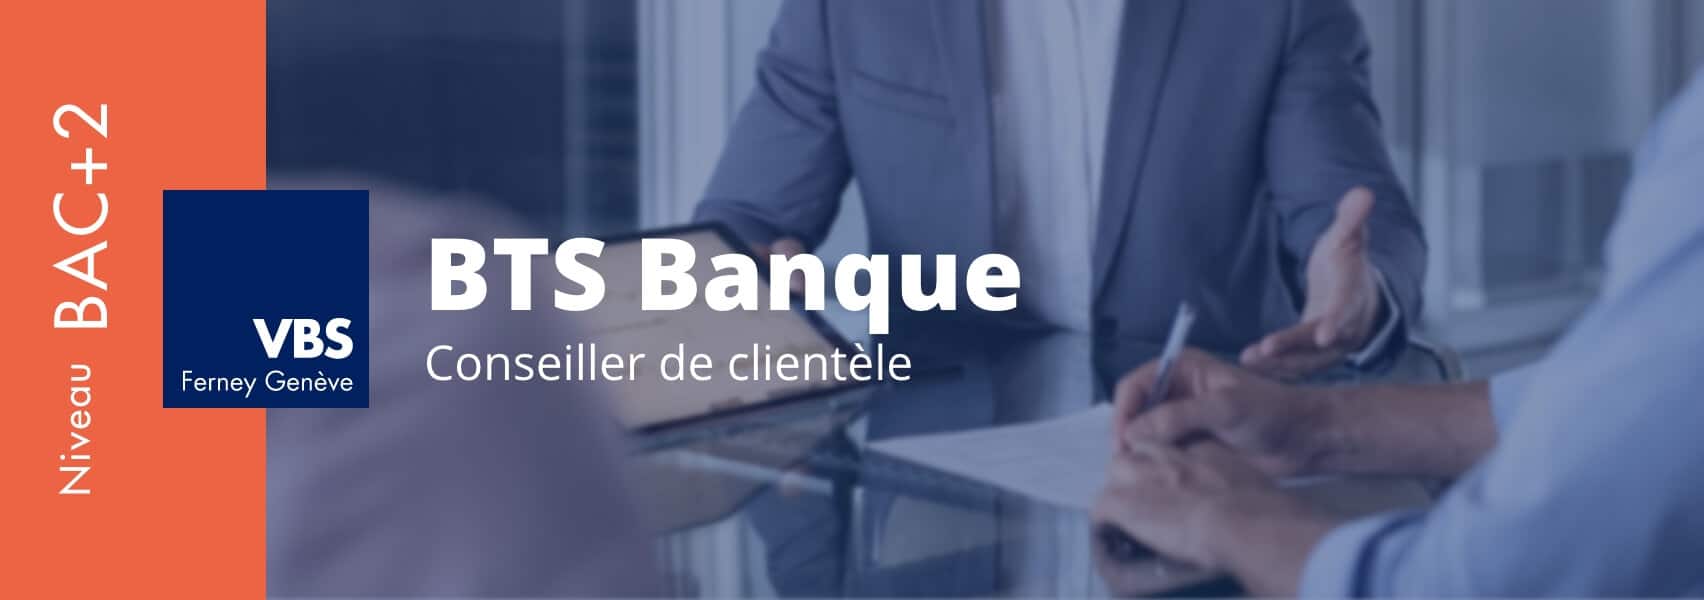 BTS Banque – Conseiller de clientèle en alternance ou en initial à Ferney-Voltaire, proche d'Annemasse et d'Annecy, délivré par la Voltaire Business School. (VBS)